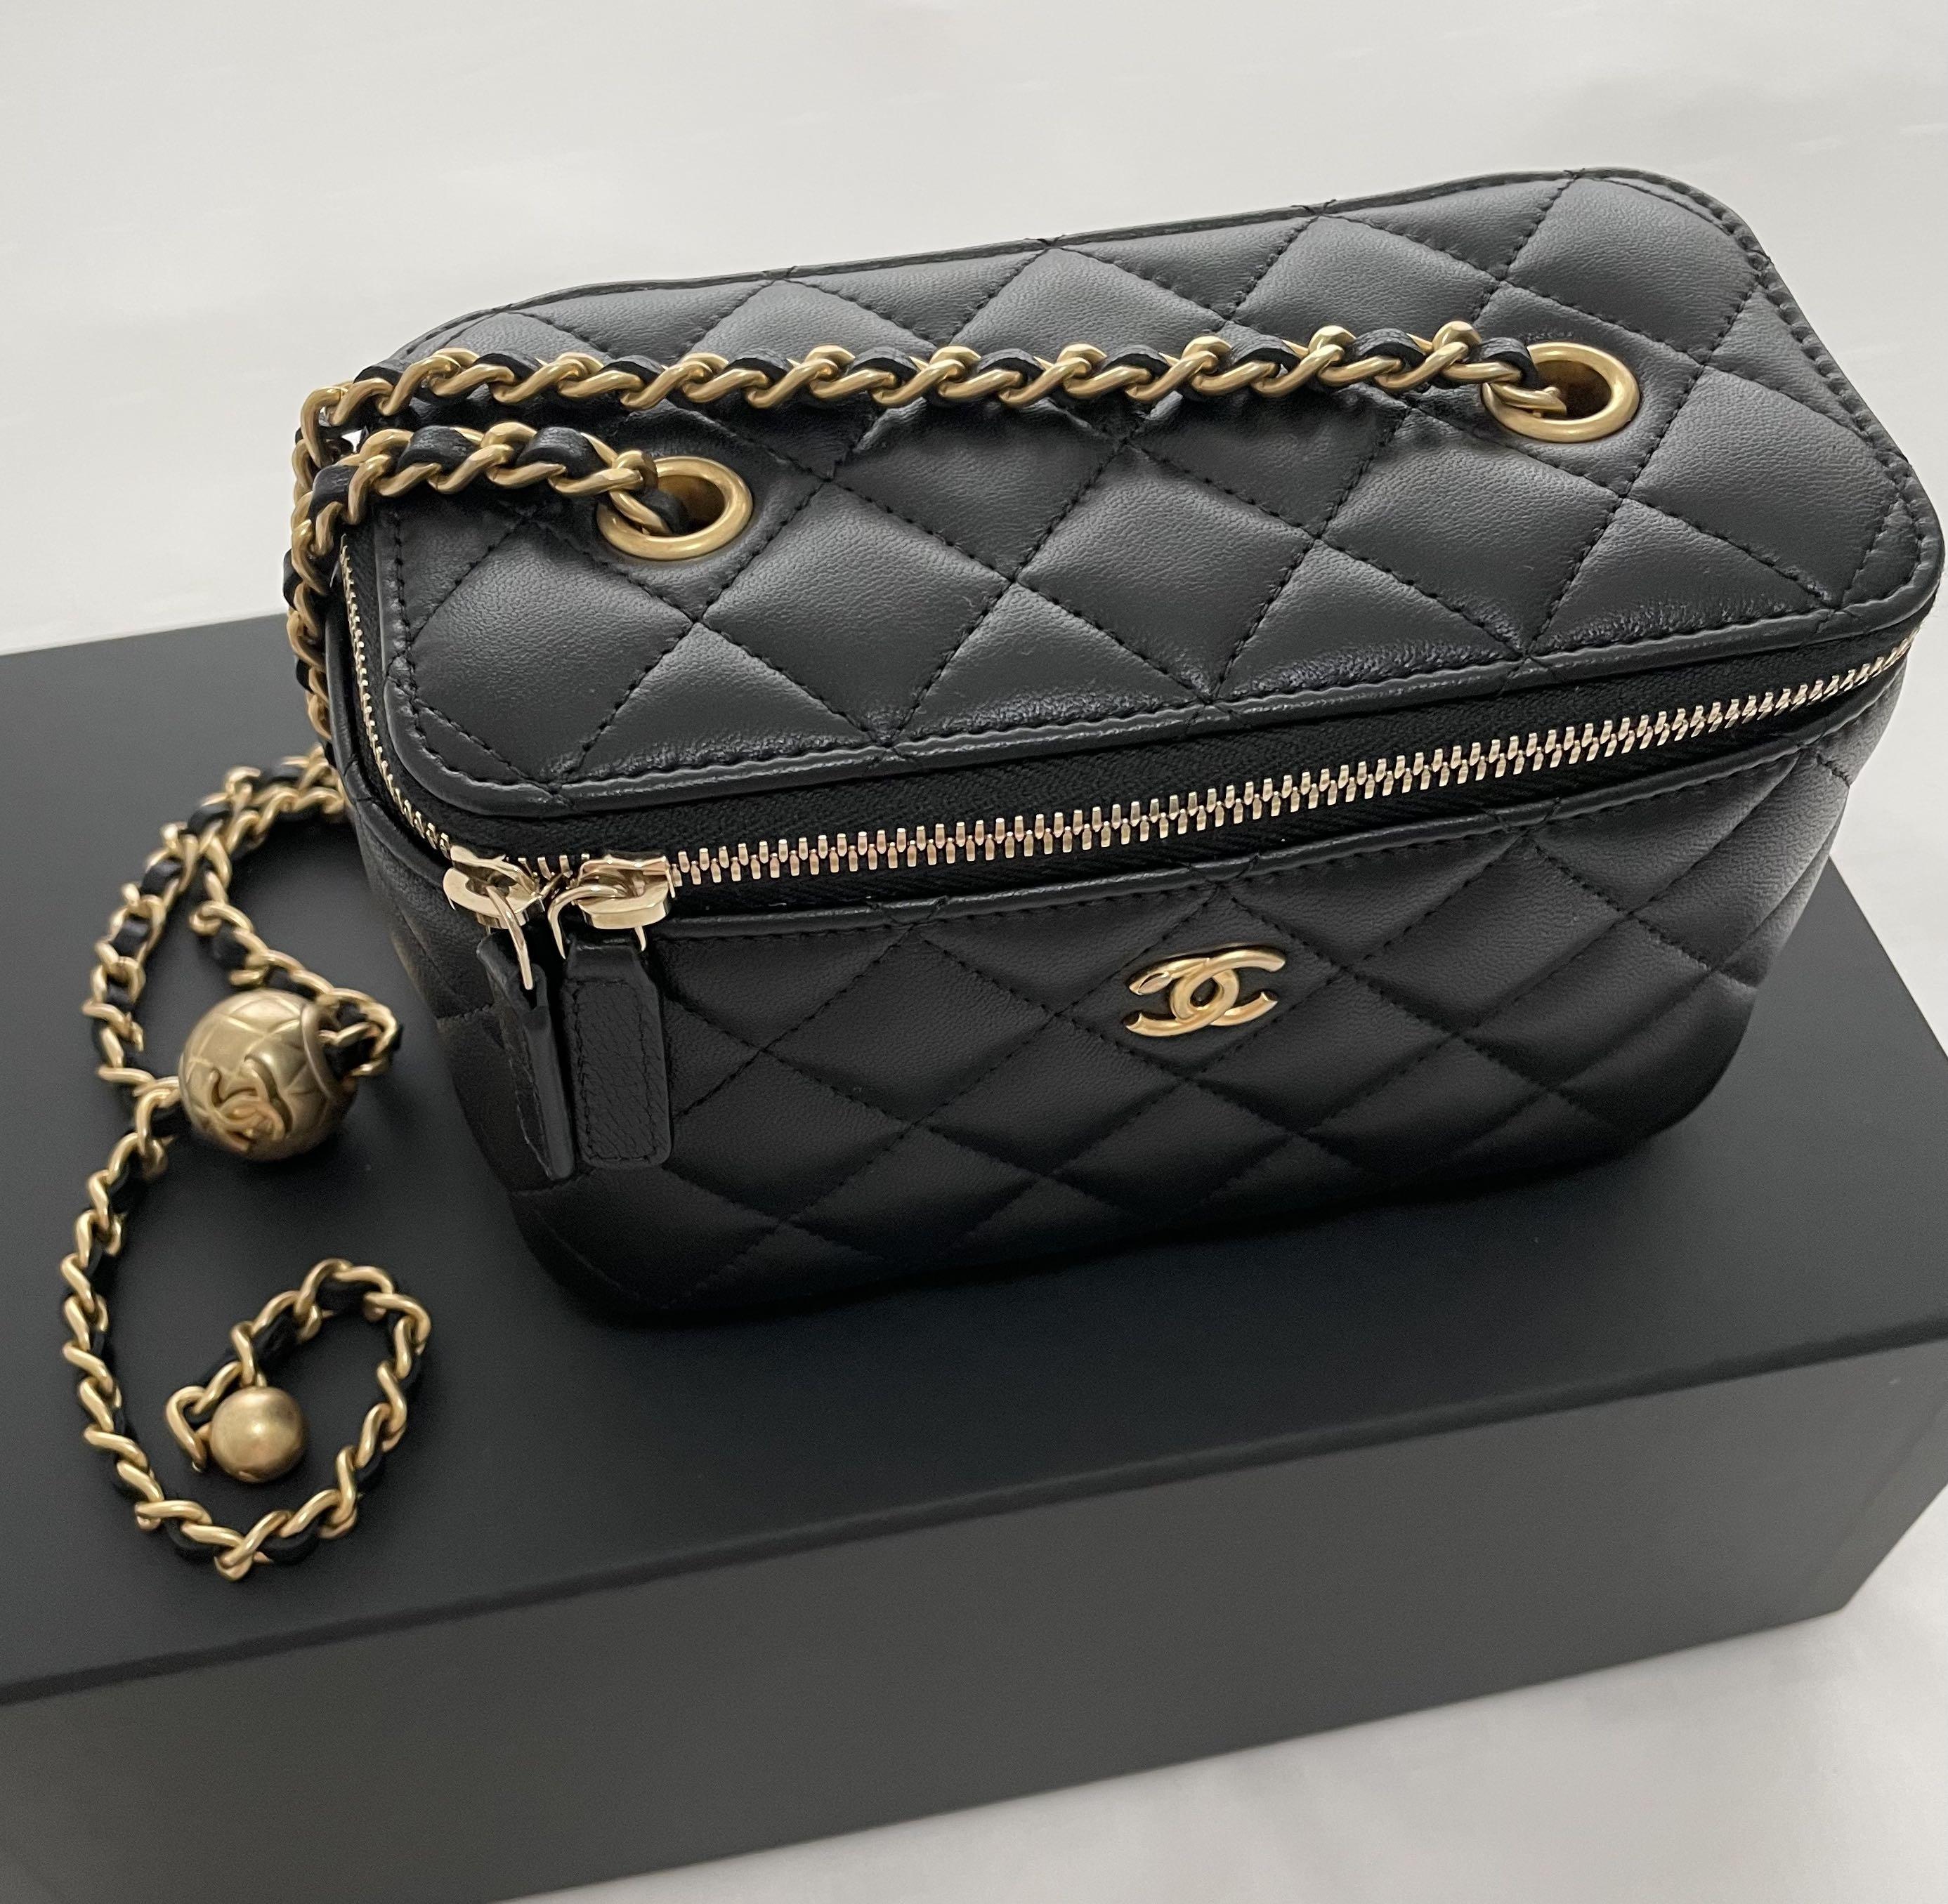 Chanel Camellia Handbag - 86 For Sale on 1stDibs